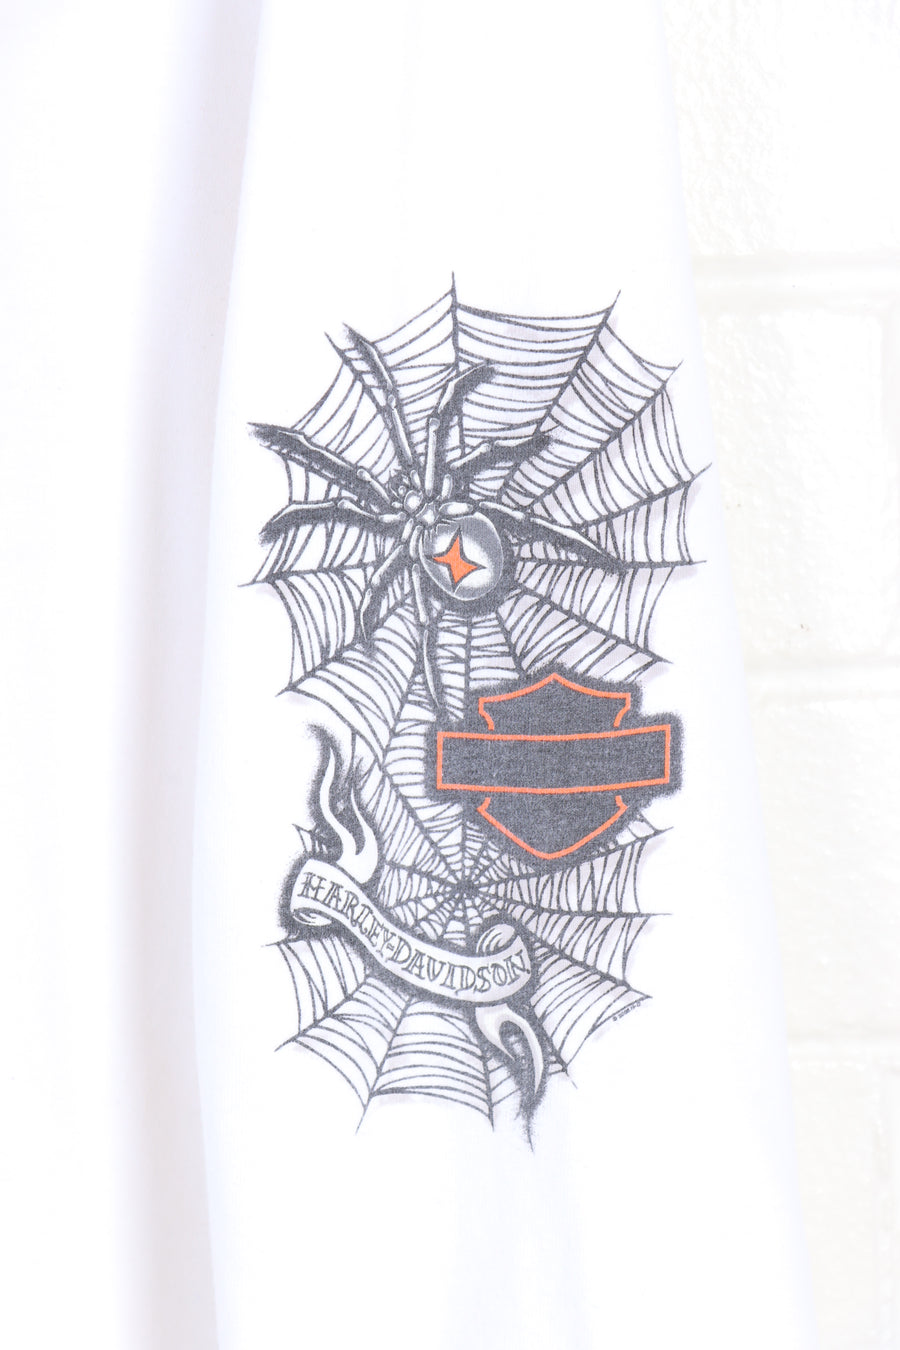 HARLEY DAVIDSON Golden Isle Spider Cob Webs Long Sleeve Tee (XL) - Vintage Sole Melbourne